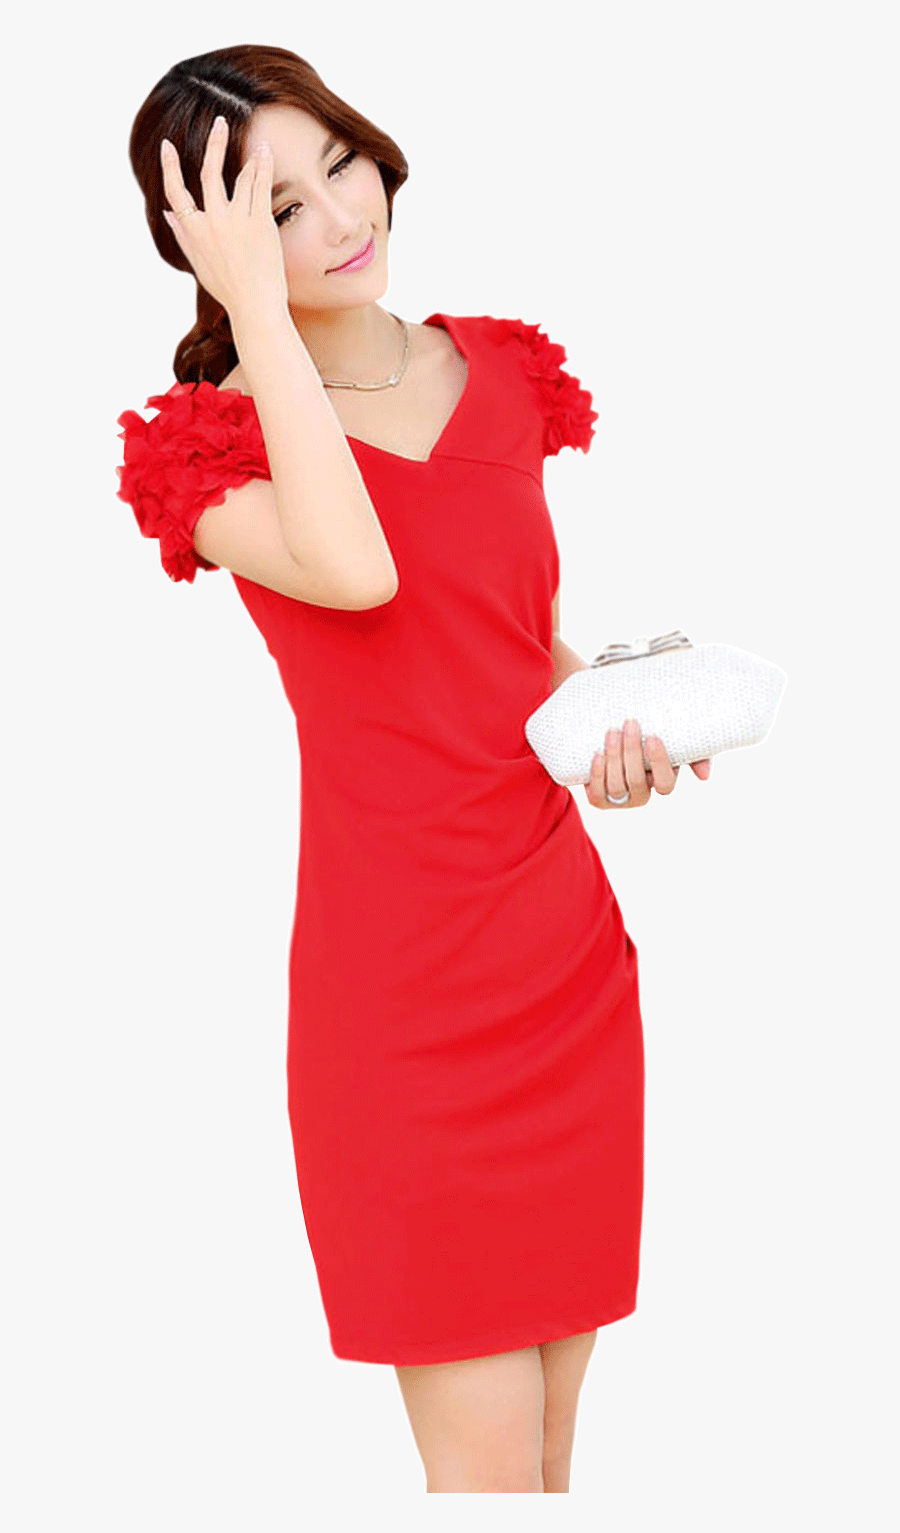 Clip Art Red Neck Bride - Cocktail Dress, Transparent Clipart